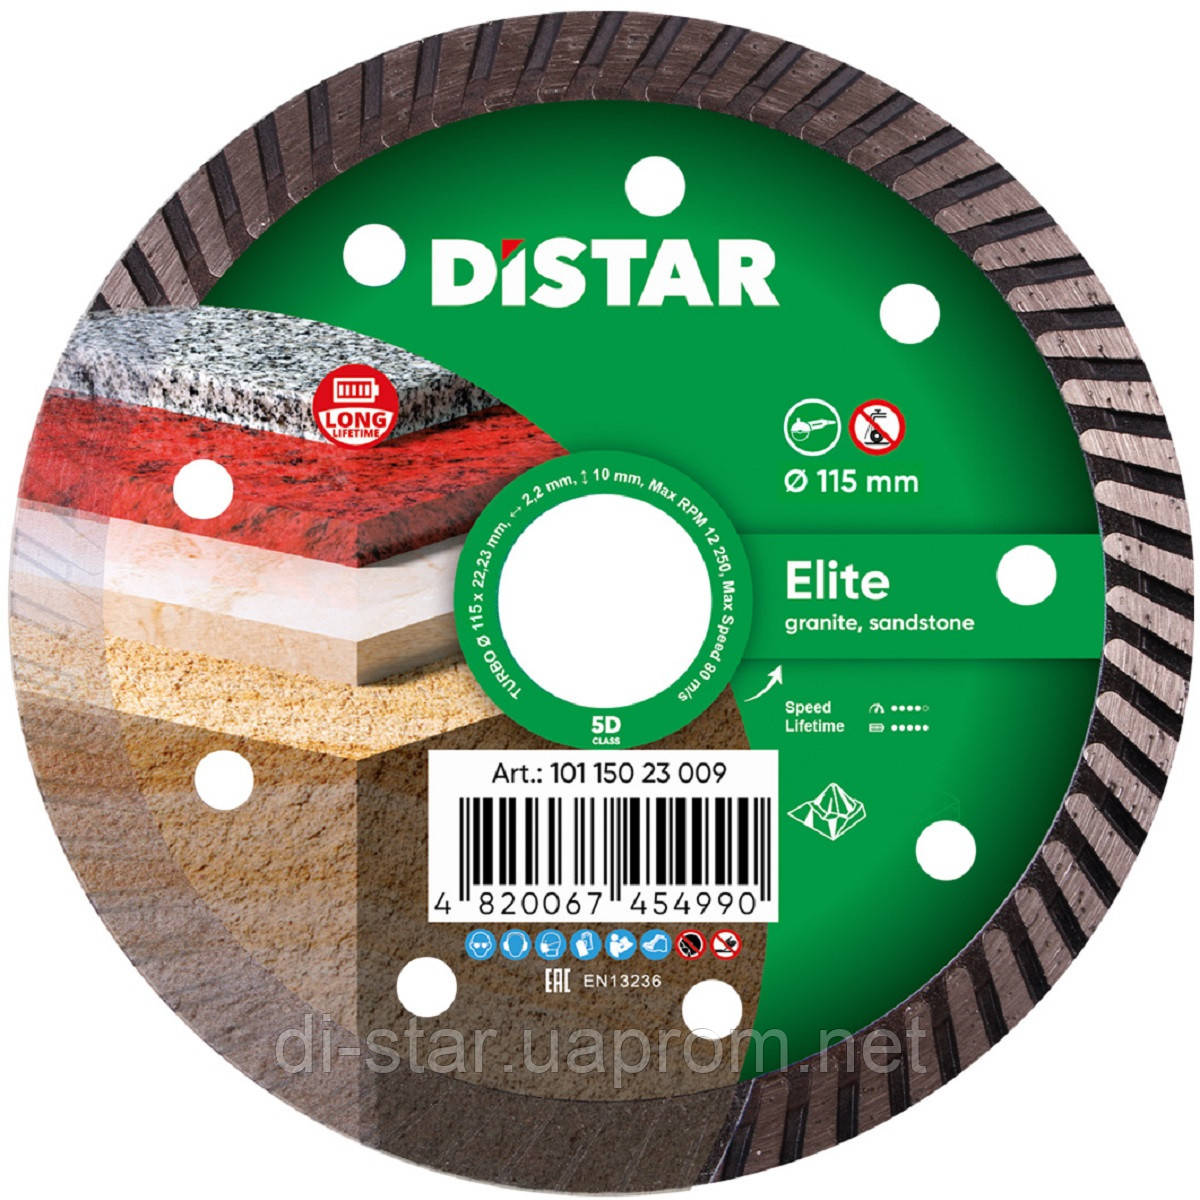 Круг алмазний Distar Turbo Elite 115 мм відрізний диск по граніту та базальту для КШМ (10115023009)